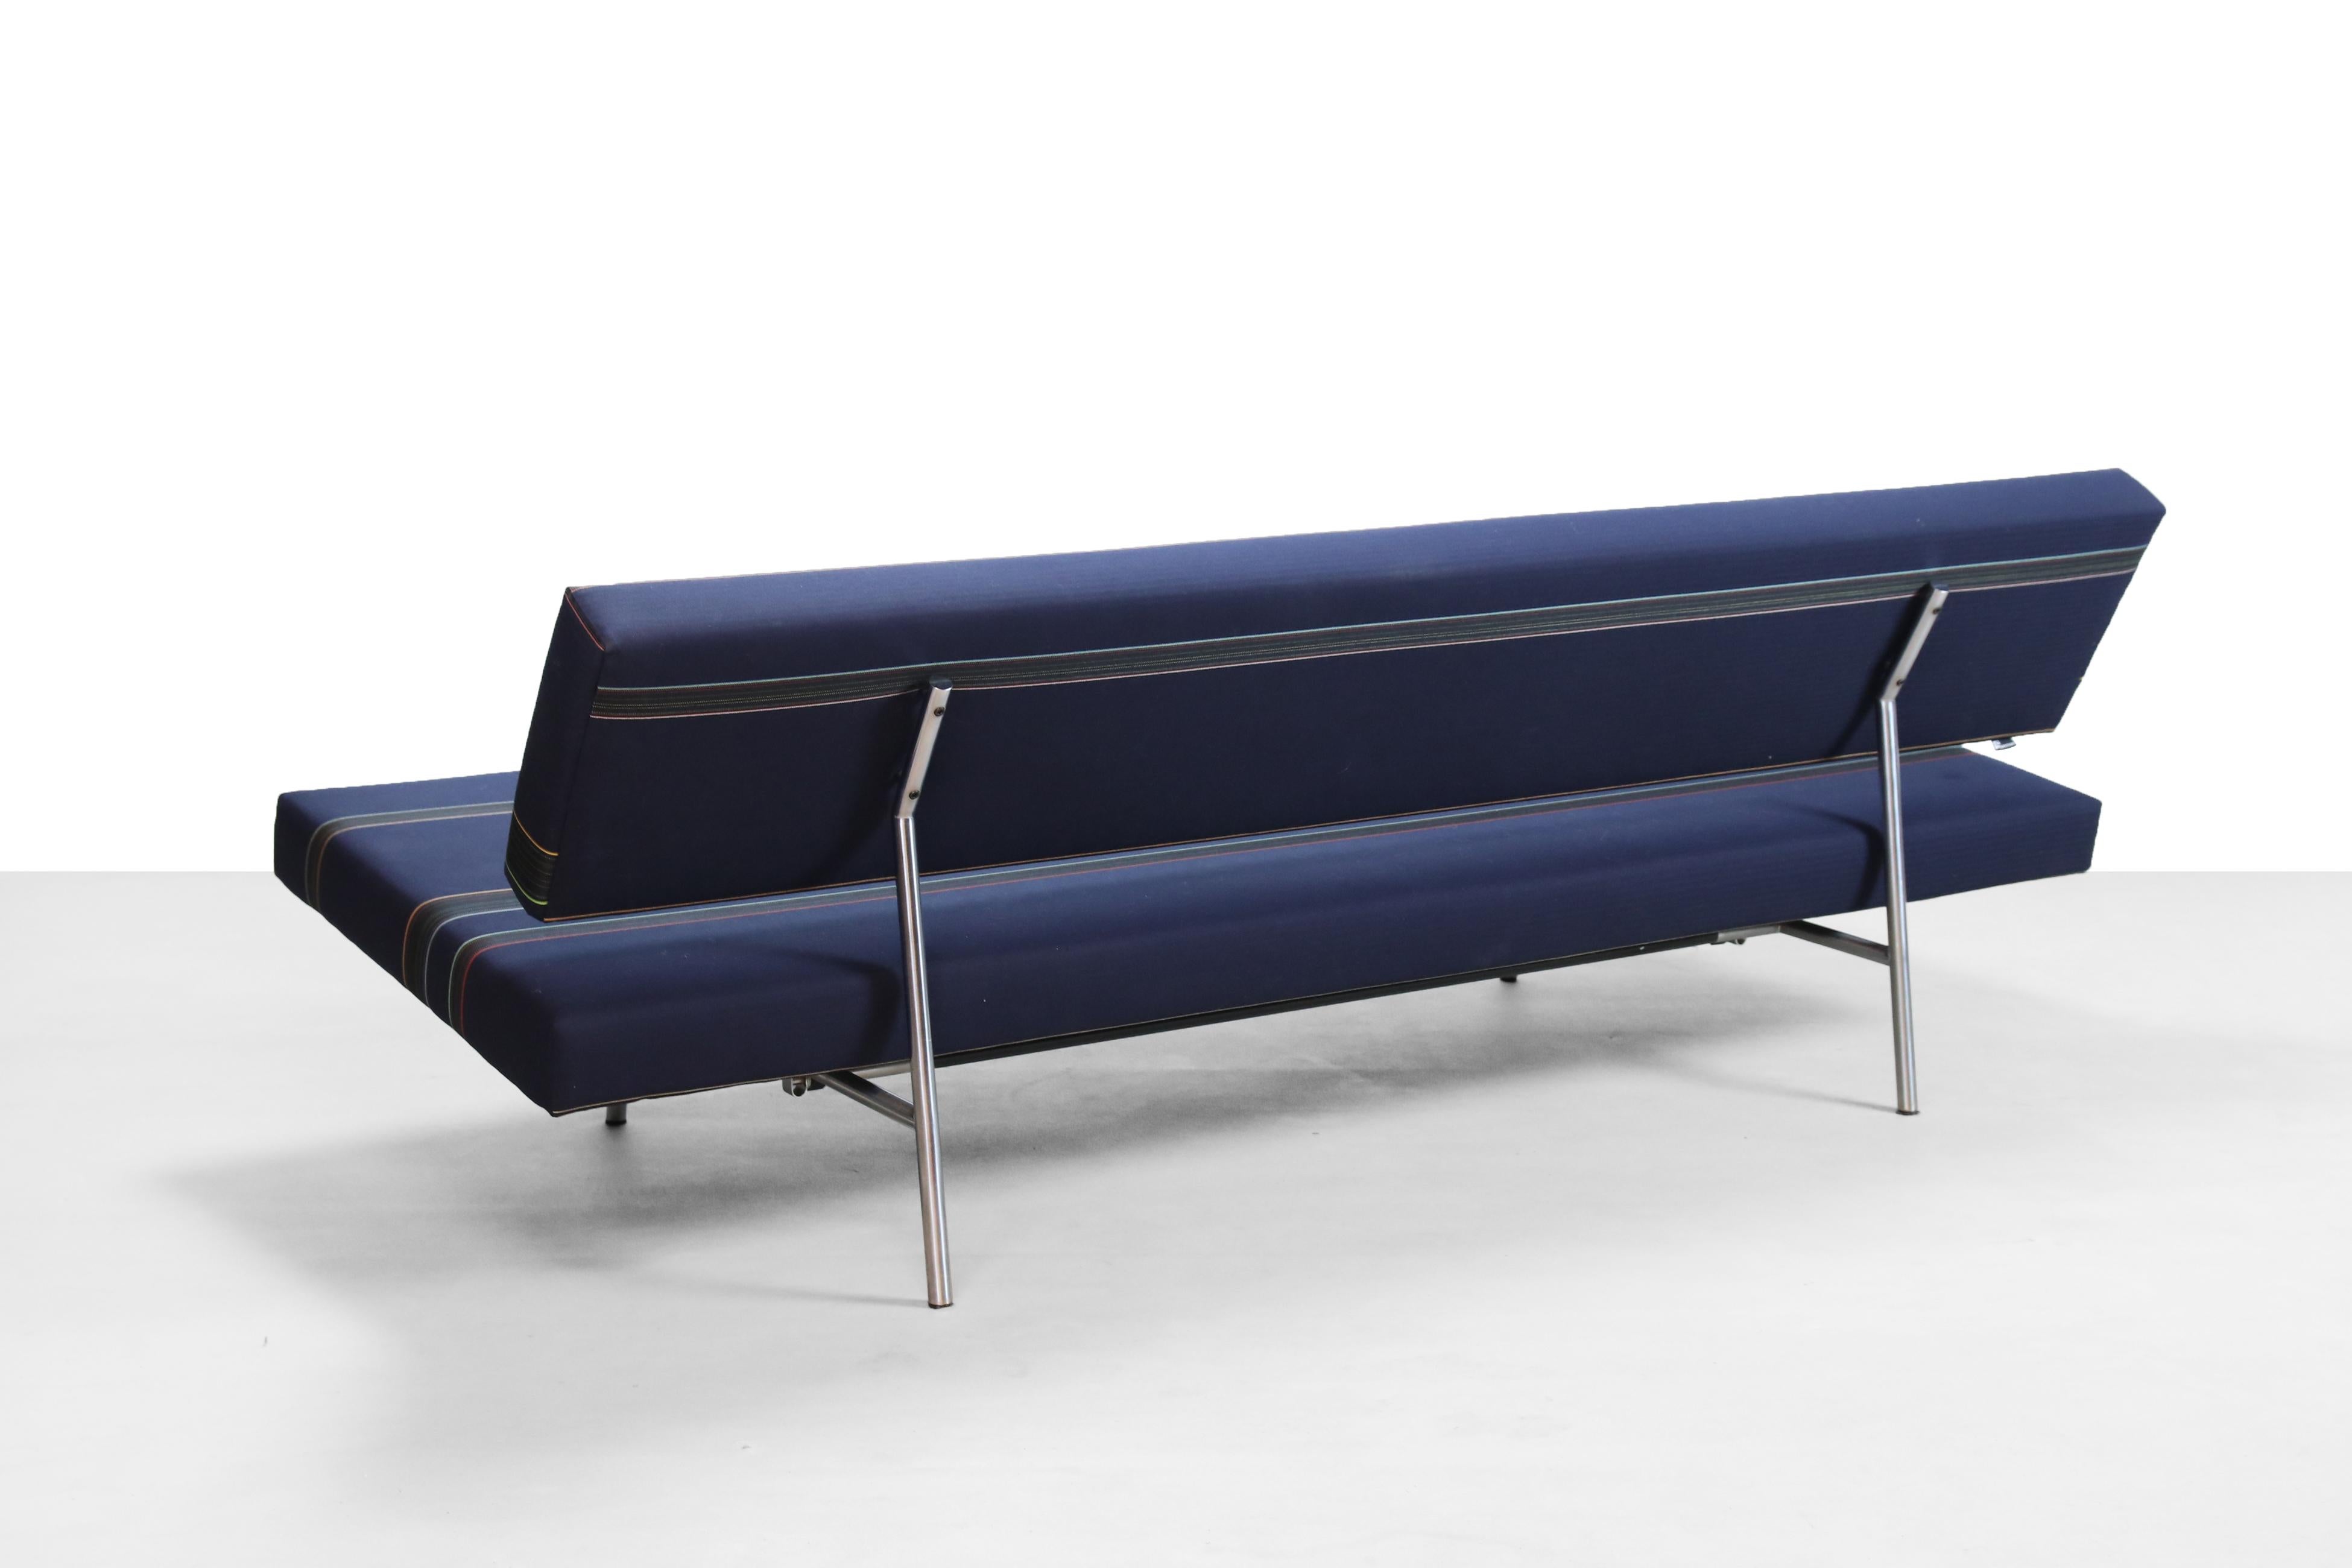 Mid-20th Century Midcentury Dutch Design Sleeper Sofa by Martin Visser, Spectrum, 1960s